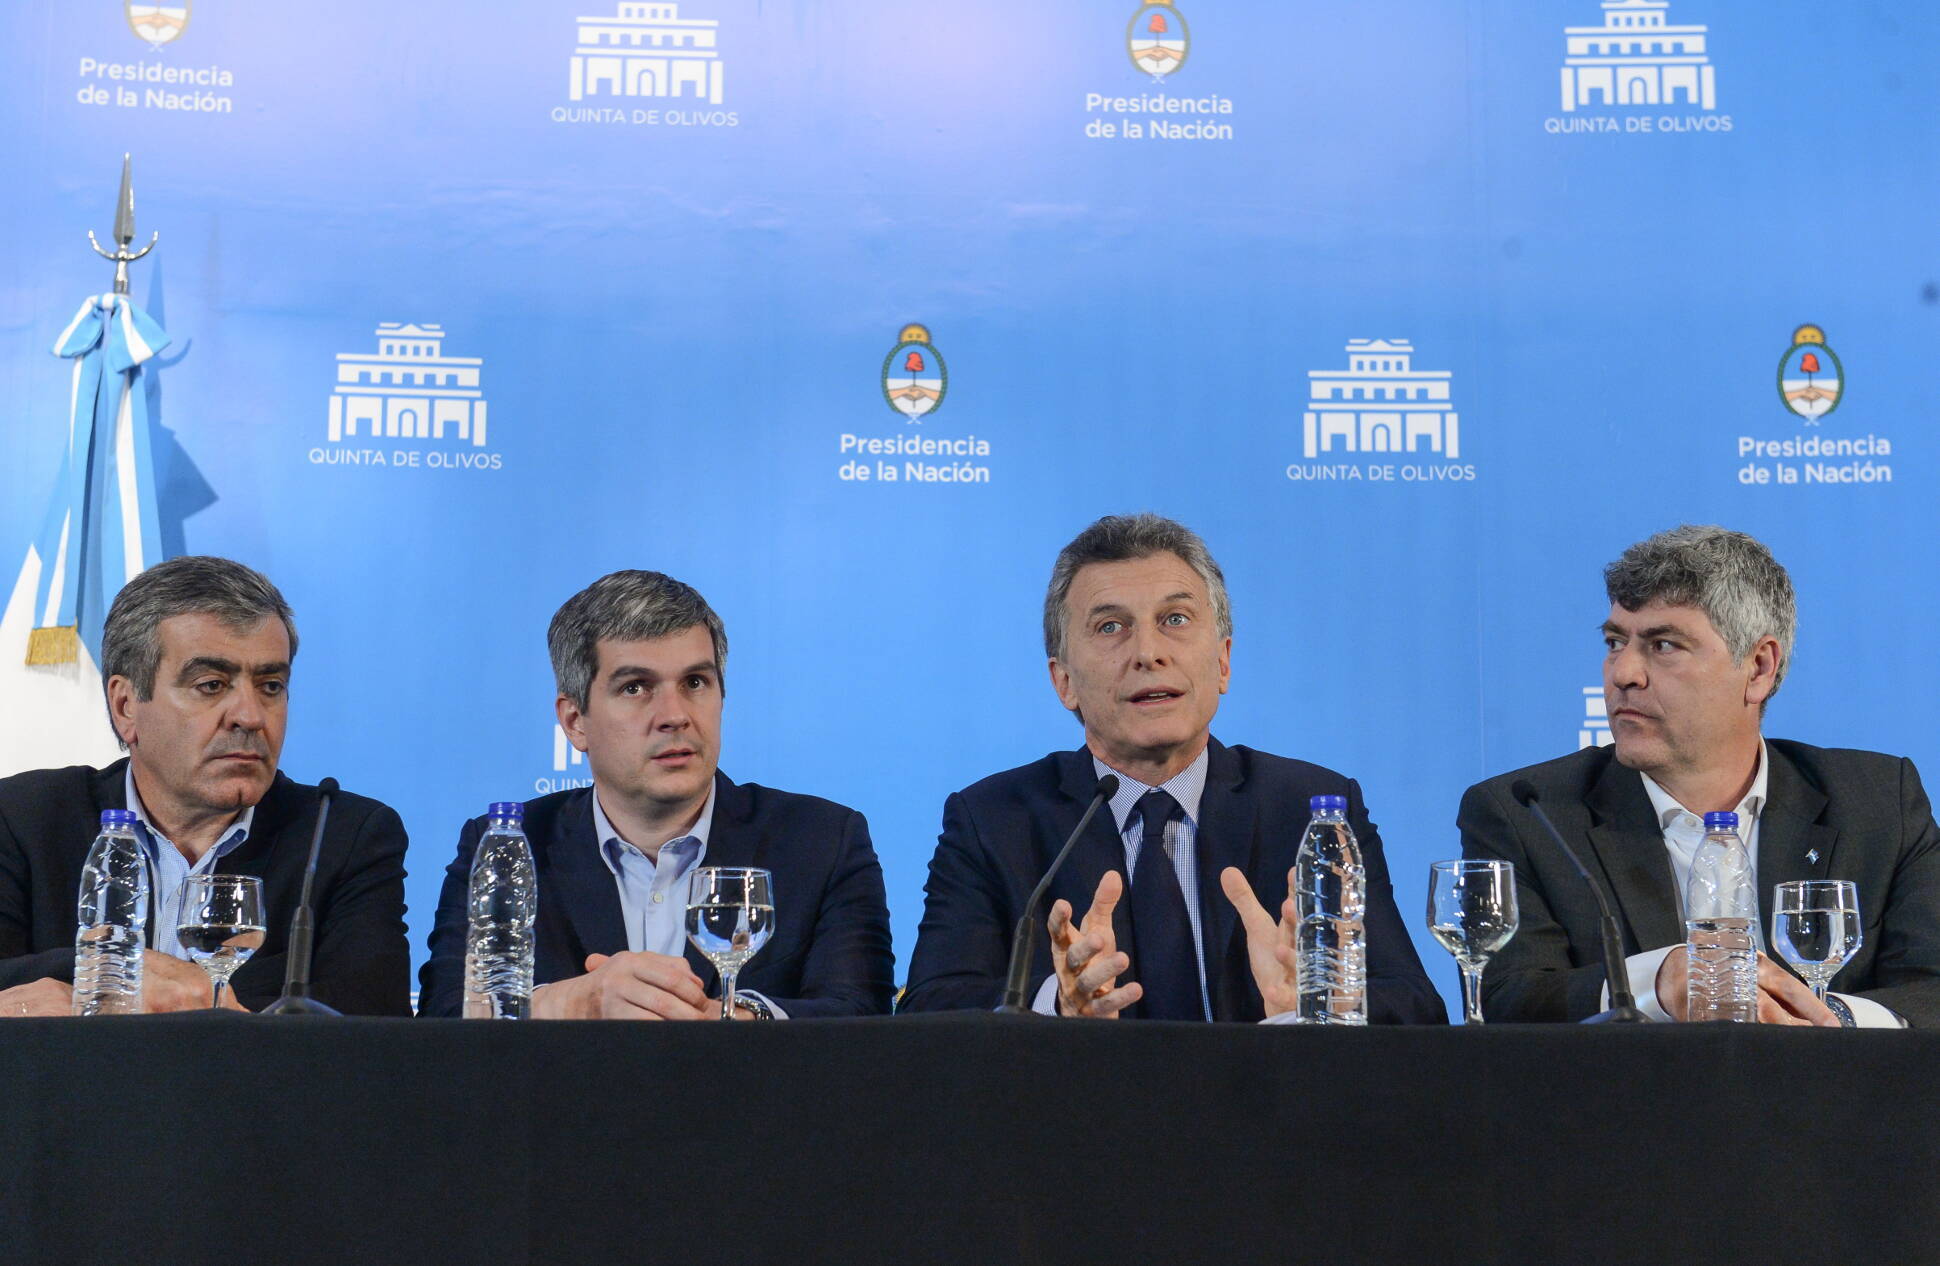 El presidente Macri presentó el Plan de Fortalecimiento de las Economías Regionales